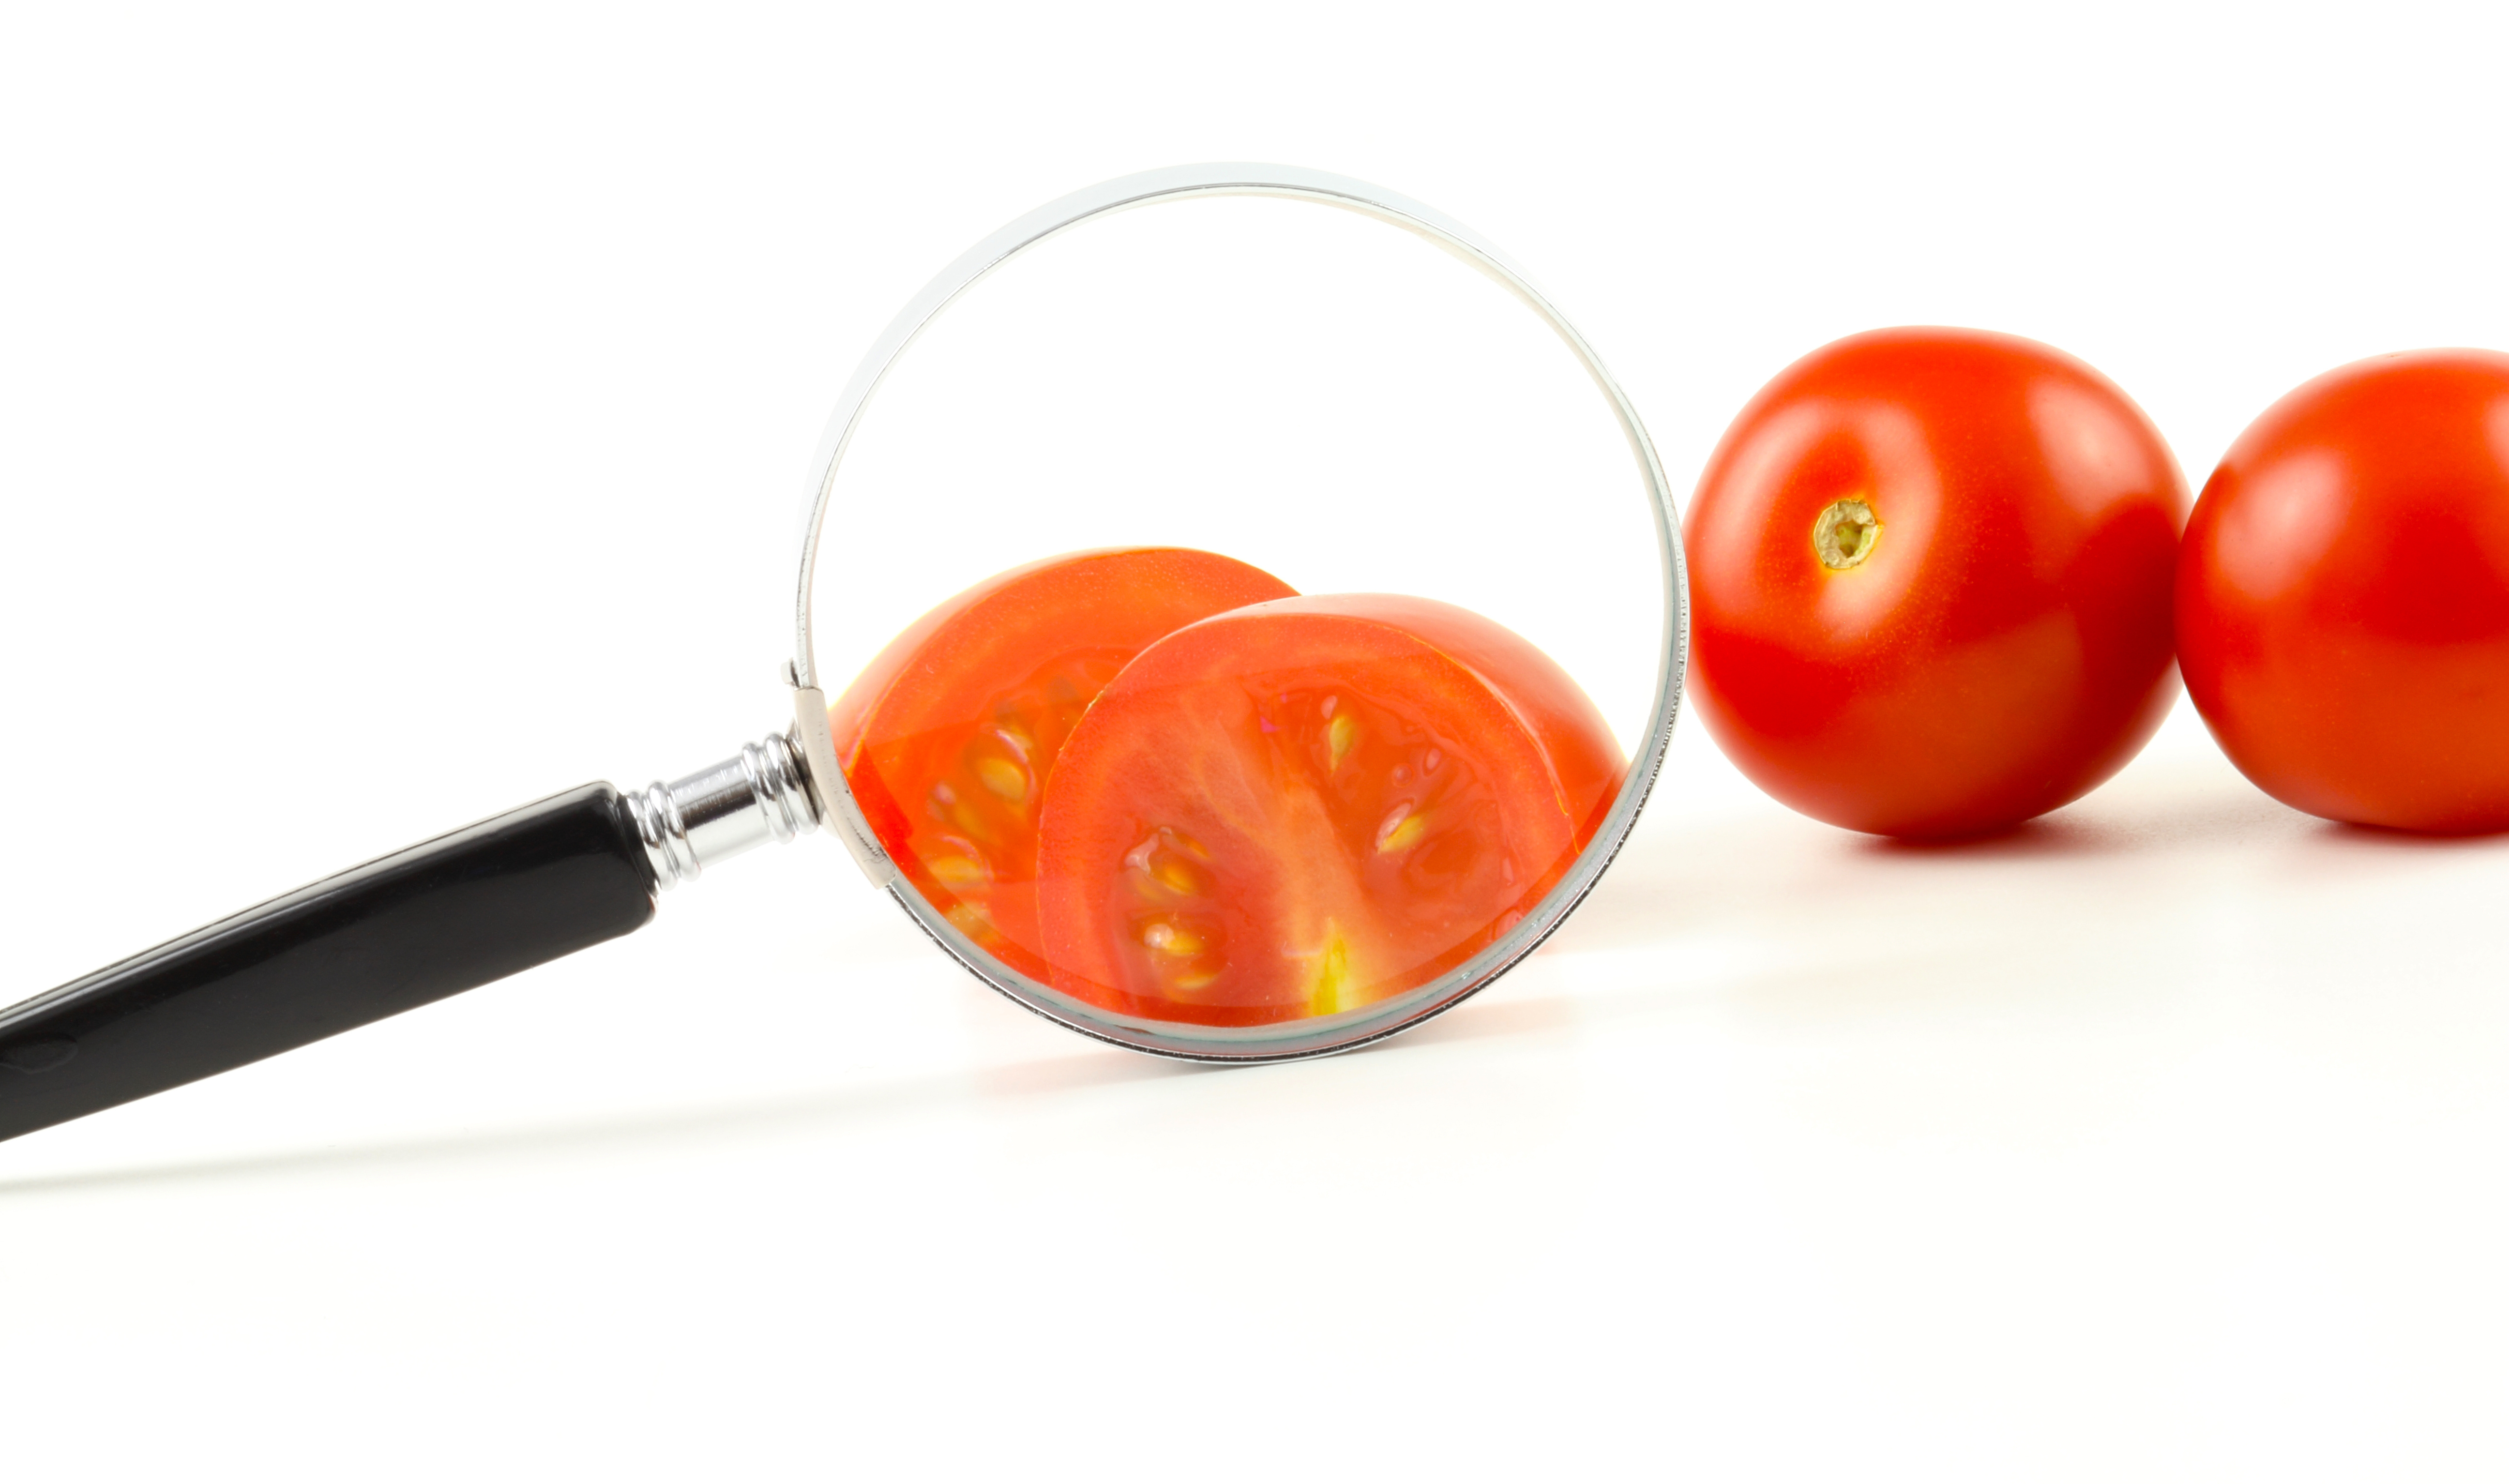 Blick durch die Lupe auf eine aufgeschittene Tomate, rechts dahinter liegen noch zwei Tomaten